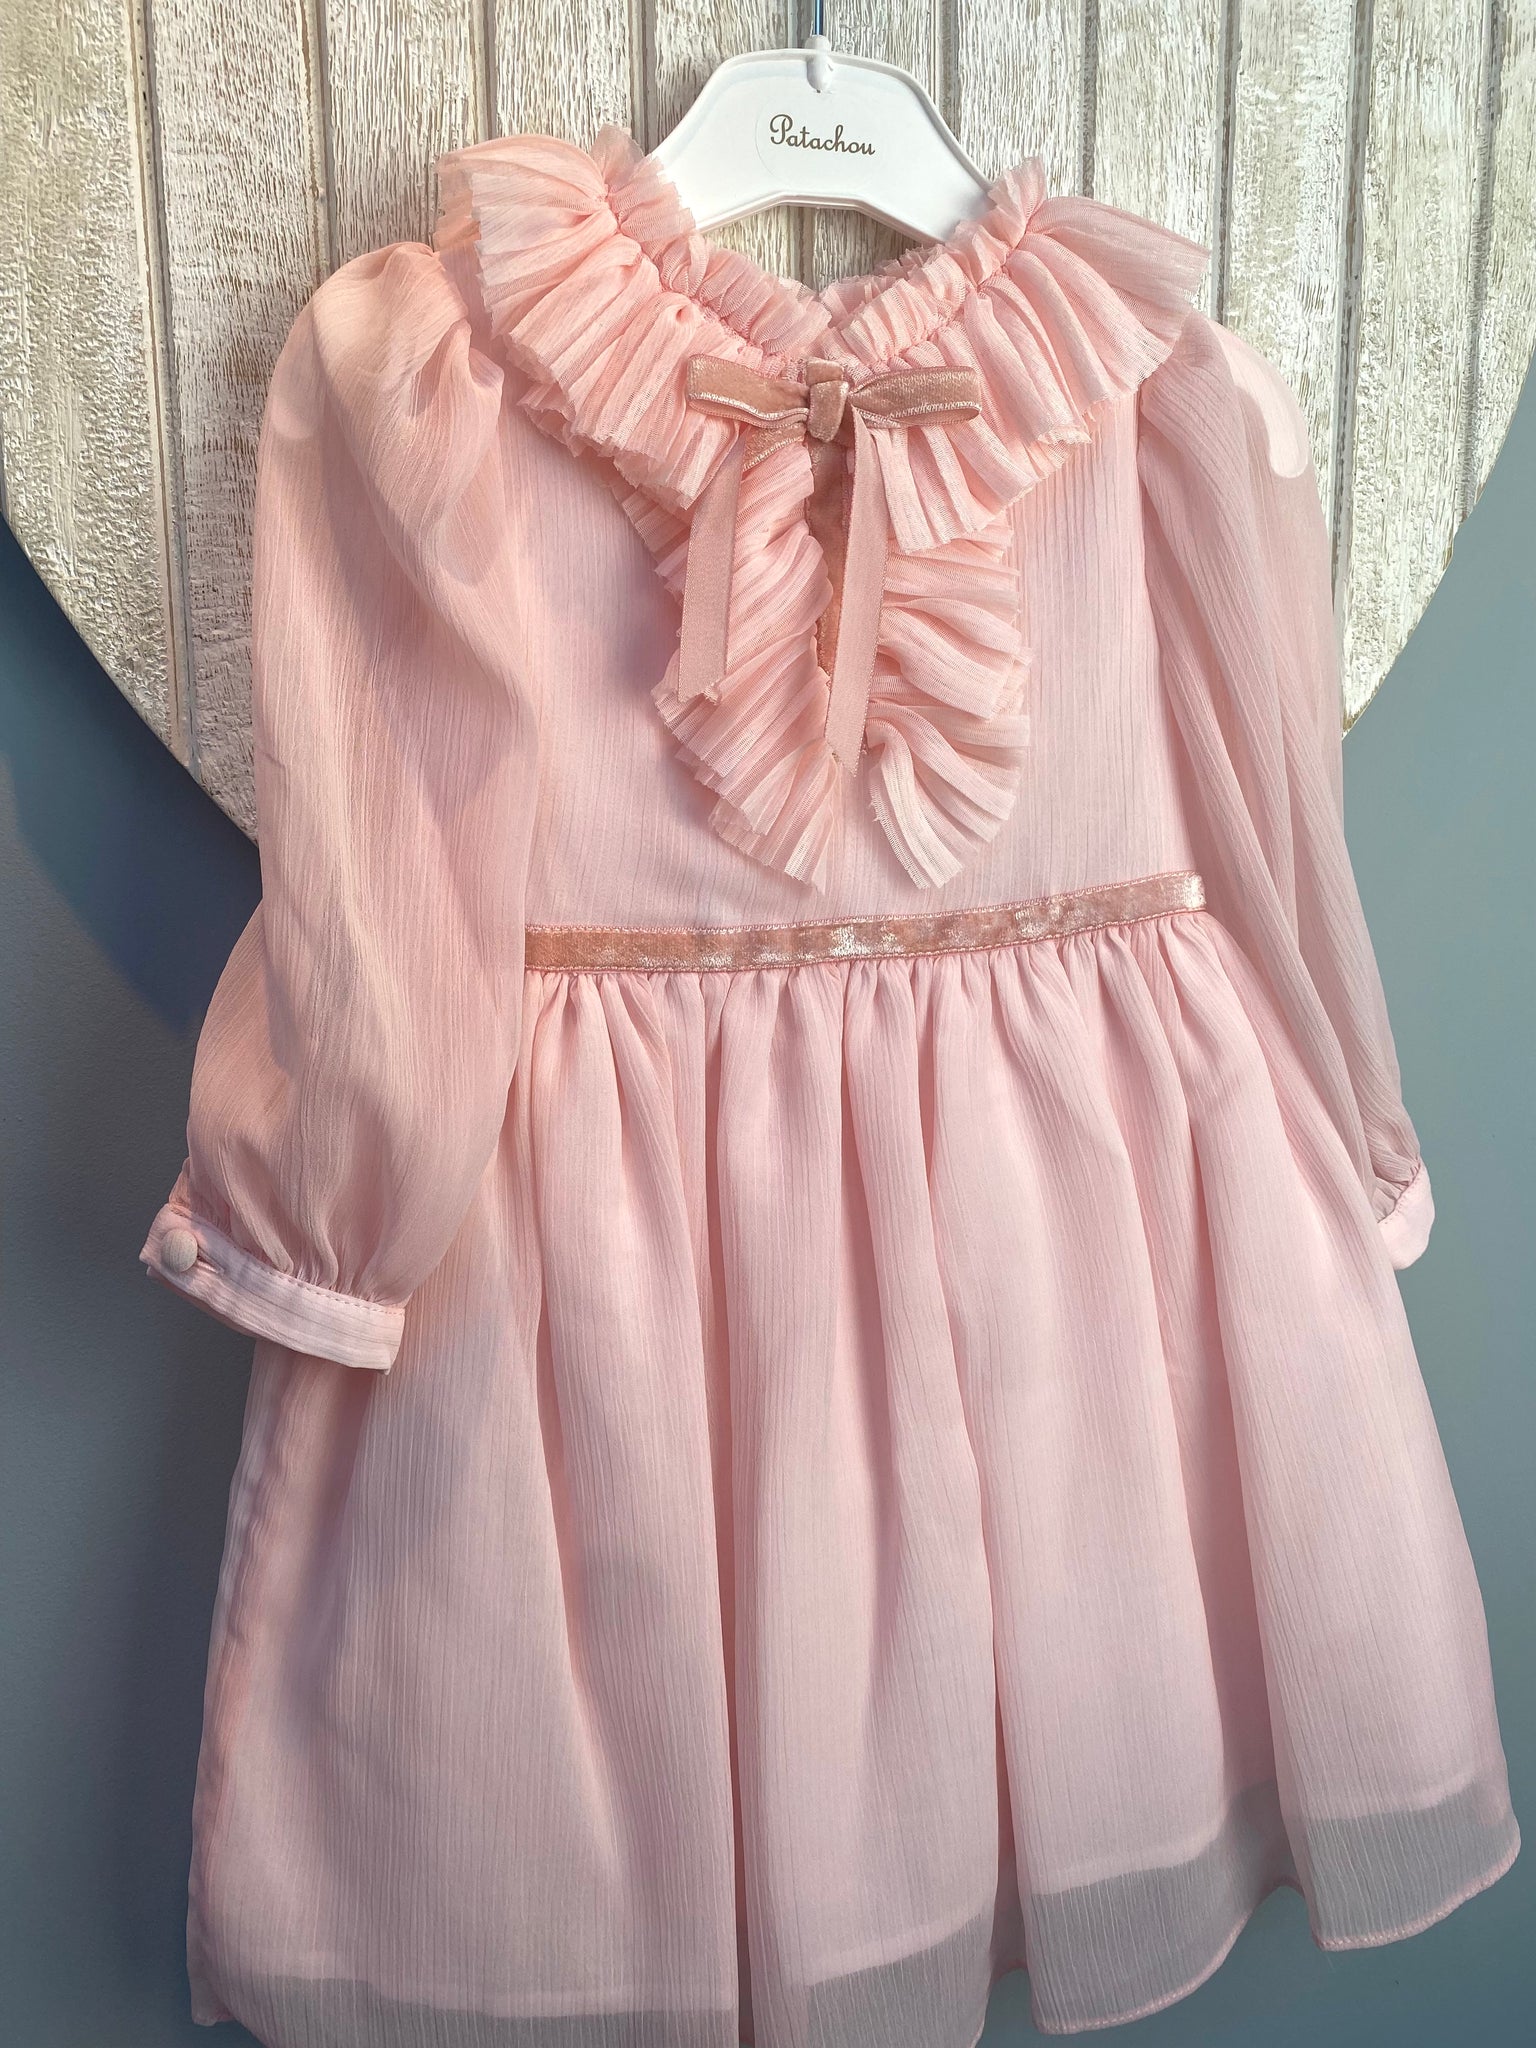 AW22 Patachou Pink Chiffon Occasion Dress